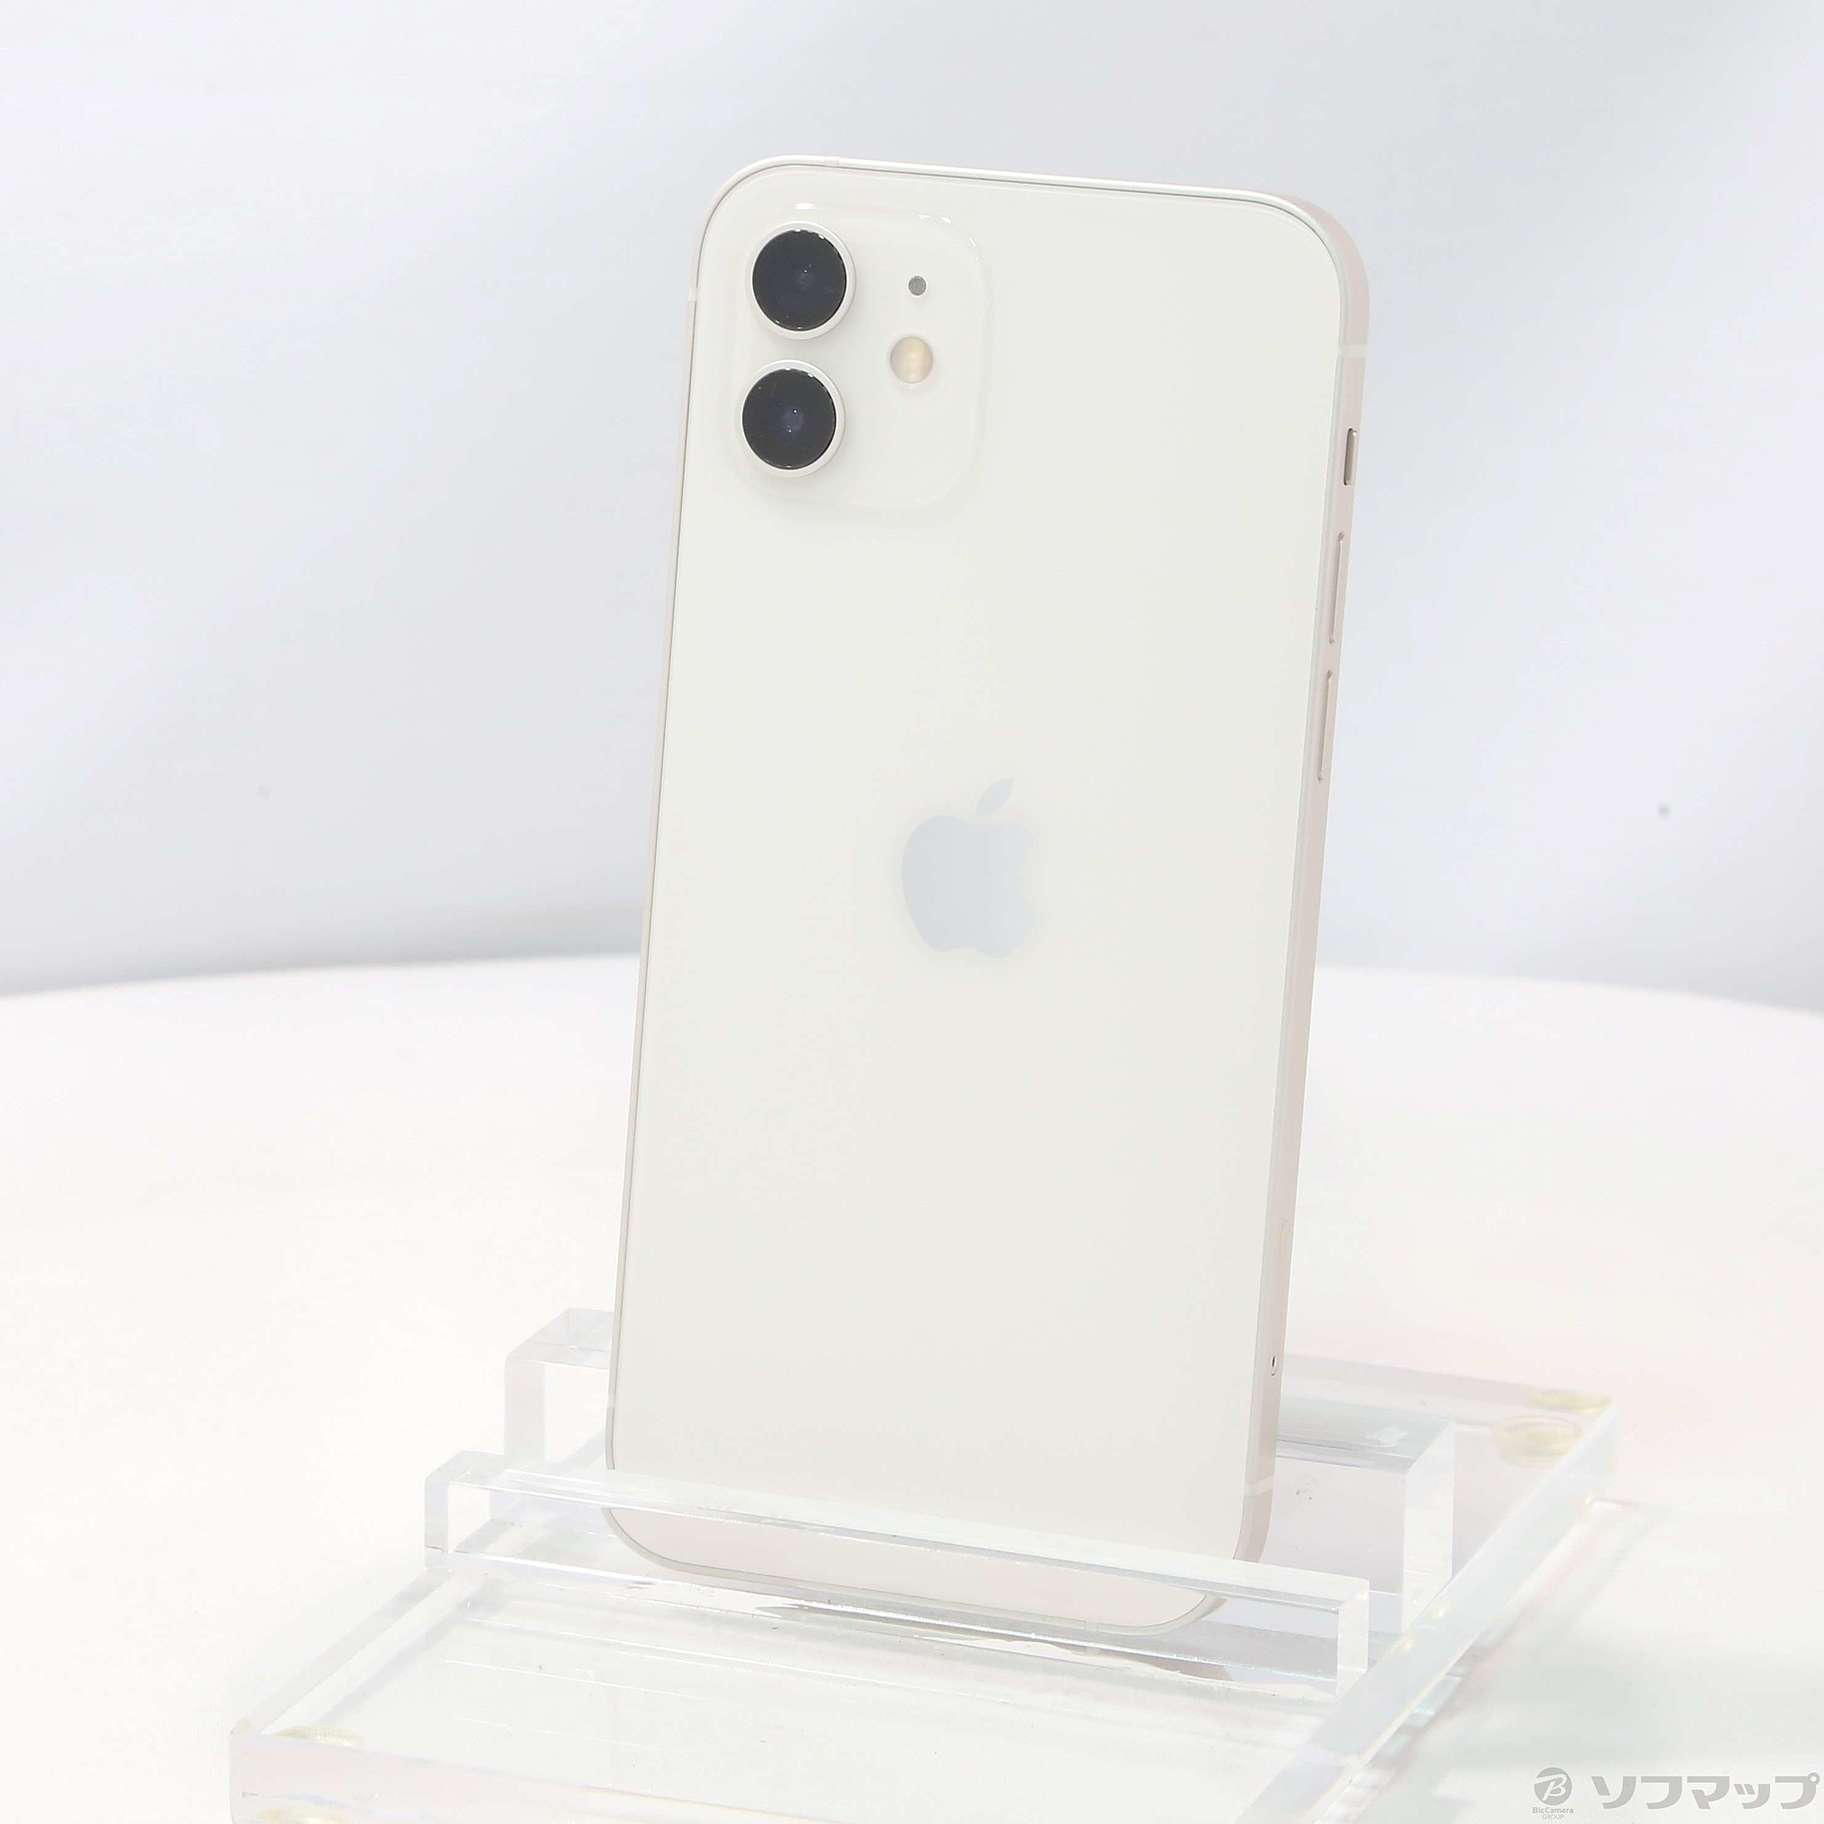 日本販売正規品 【新品】iPhone12 MGHP3J/A ホワイト 64GB スマートフォン本体